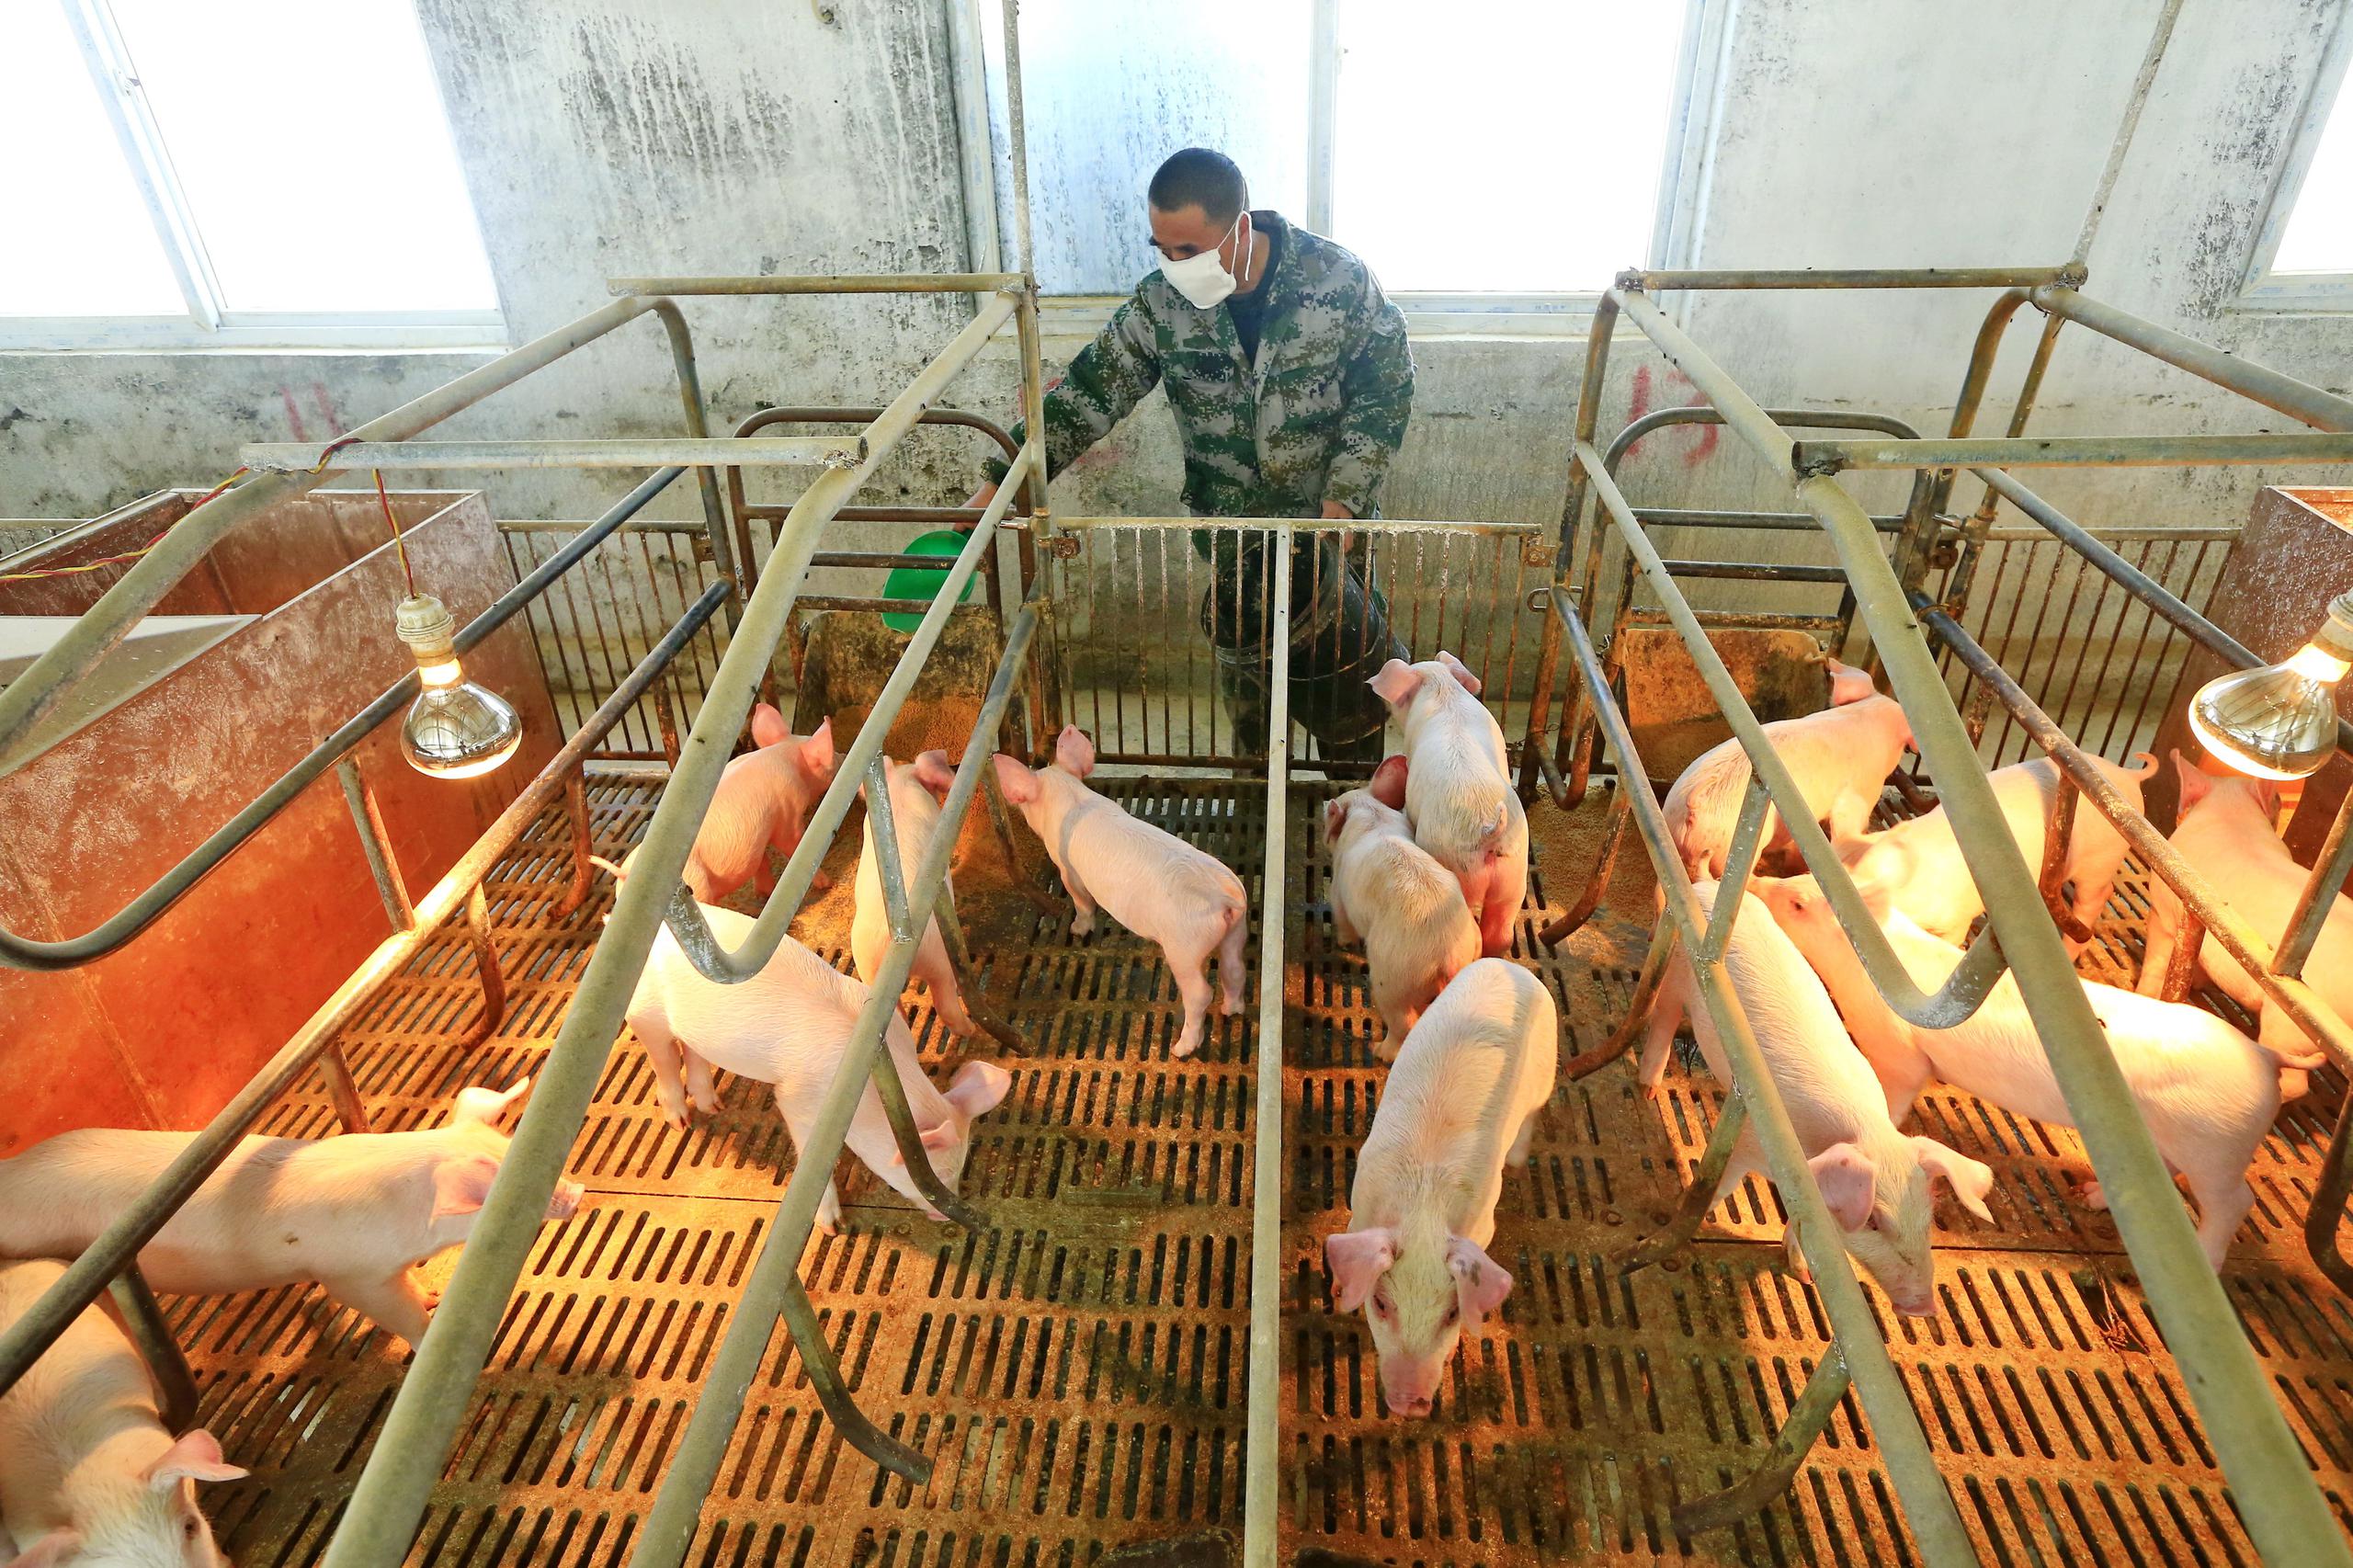 Cerdos en la República Dominicana presentan la enfermedad de la Peste Porcina Africana. EFE/EPA/ZHONG MIN/Archivo